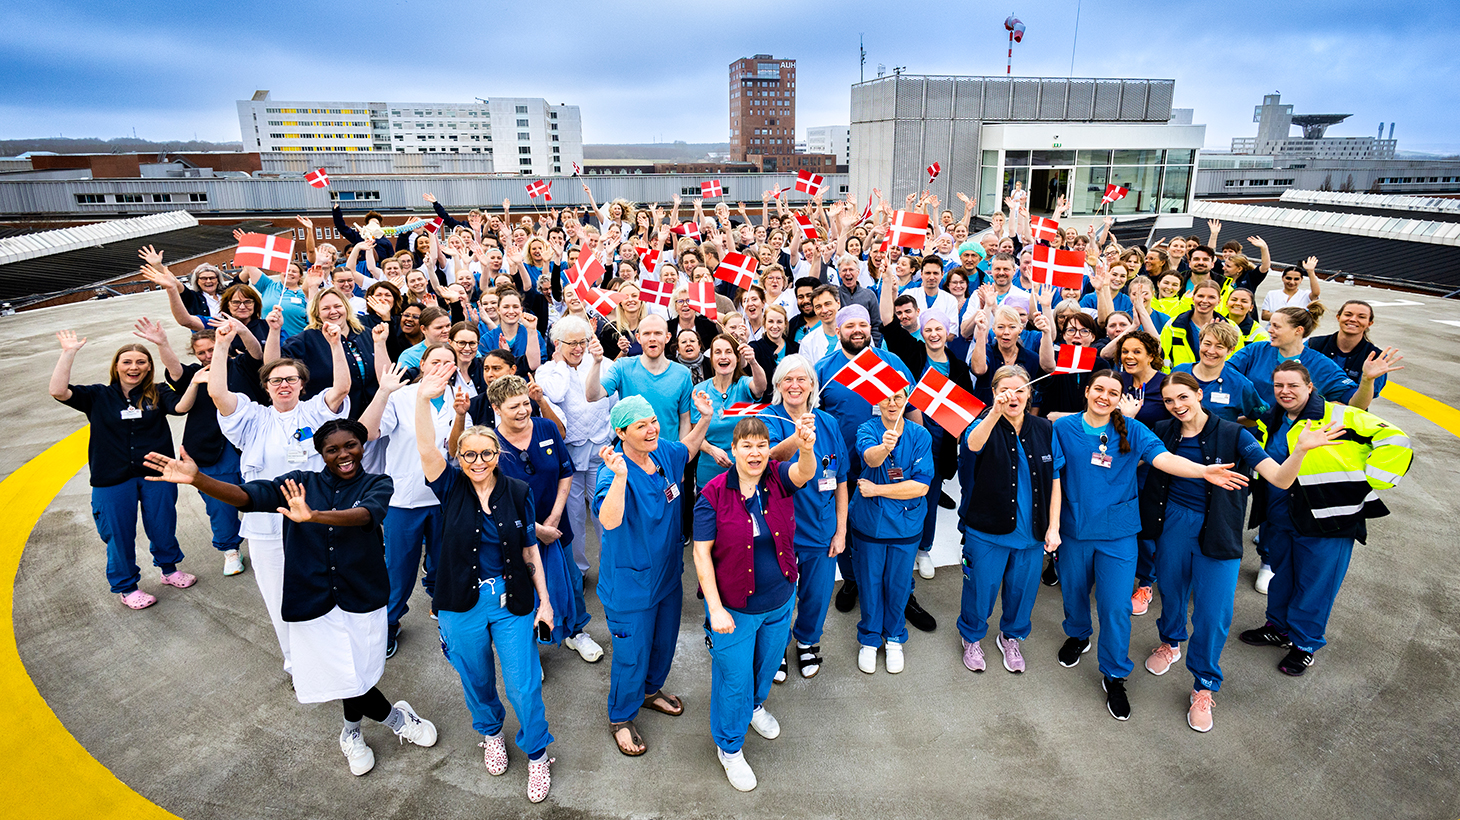 Medarbejdere fejrer kåringen til Danmarks Bedste Hospital på helikopterplatformen